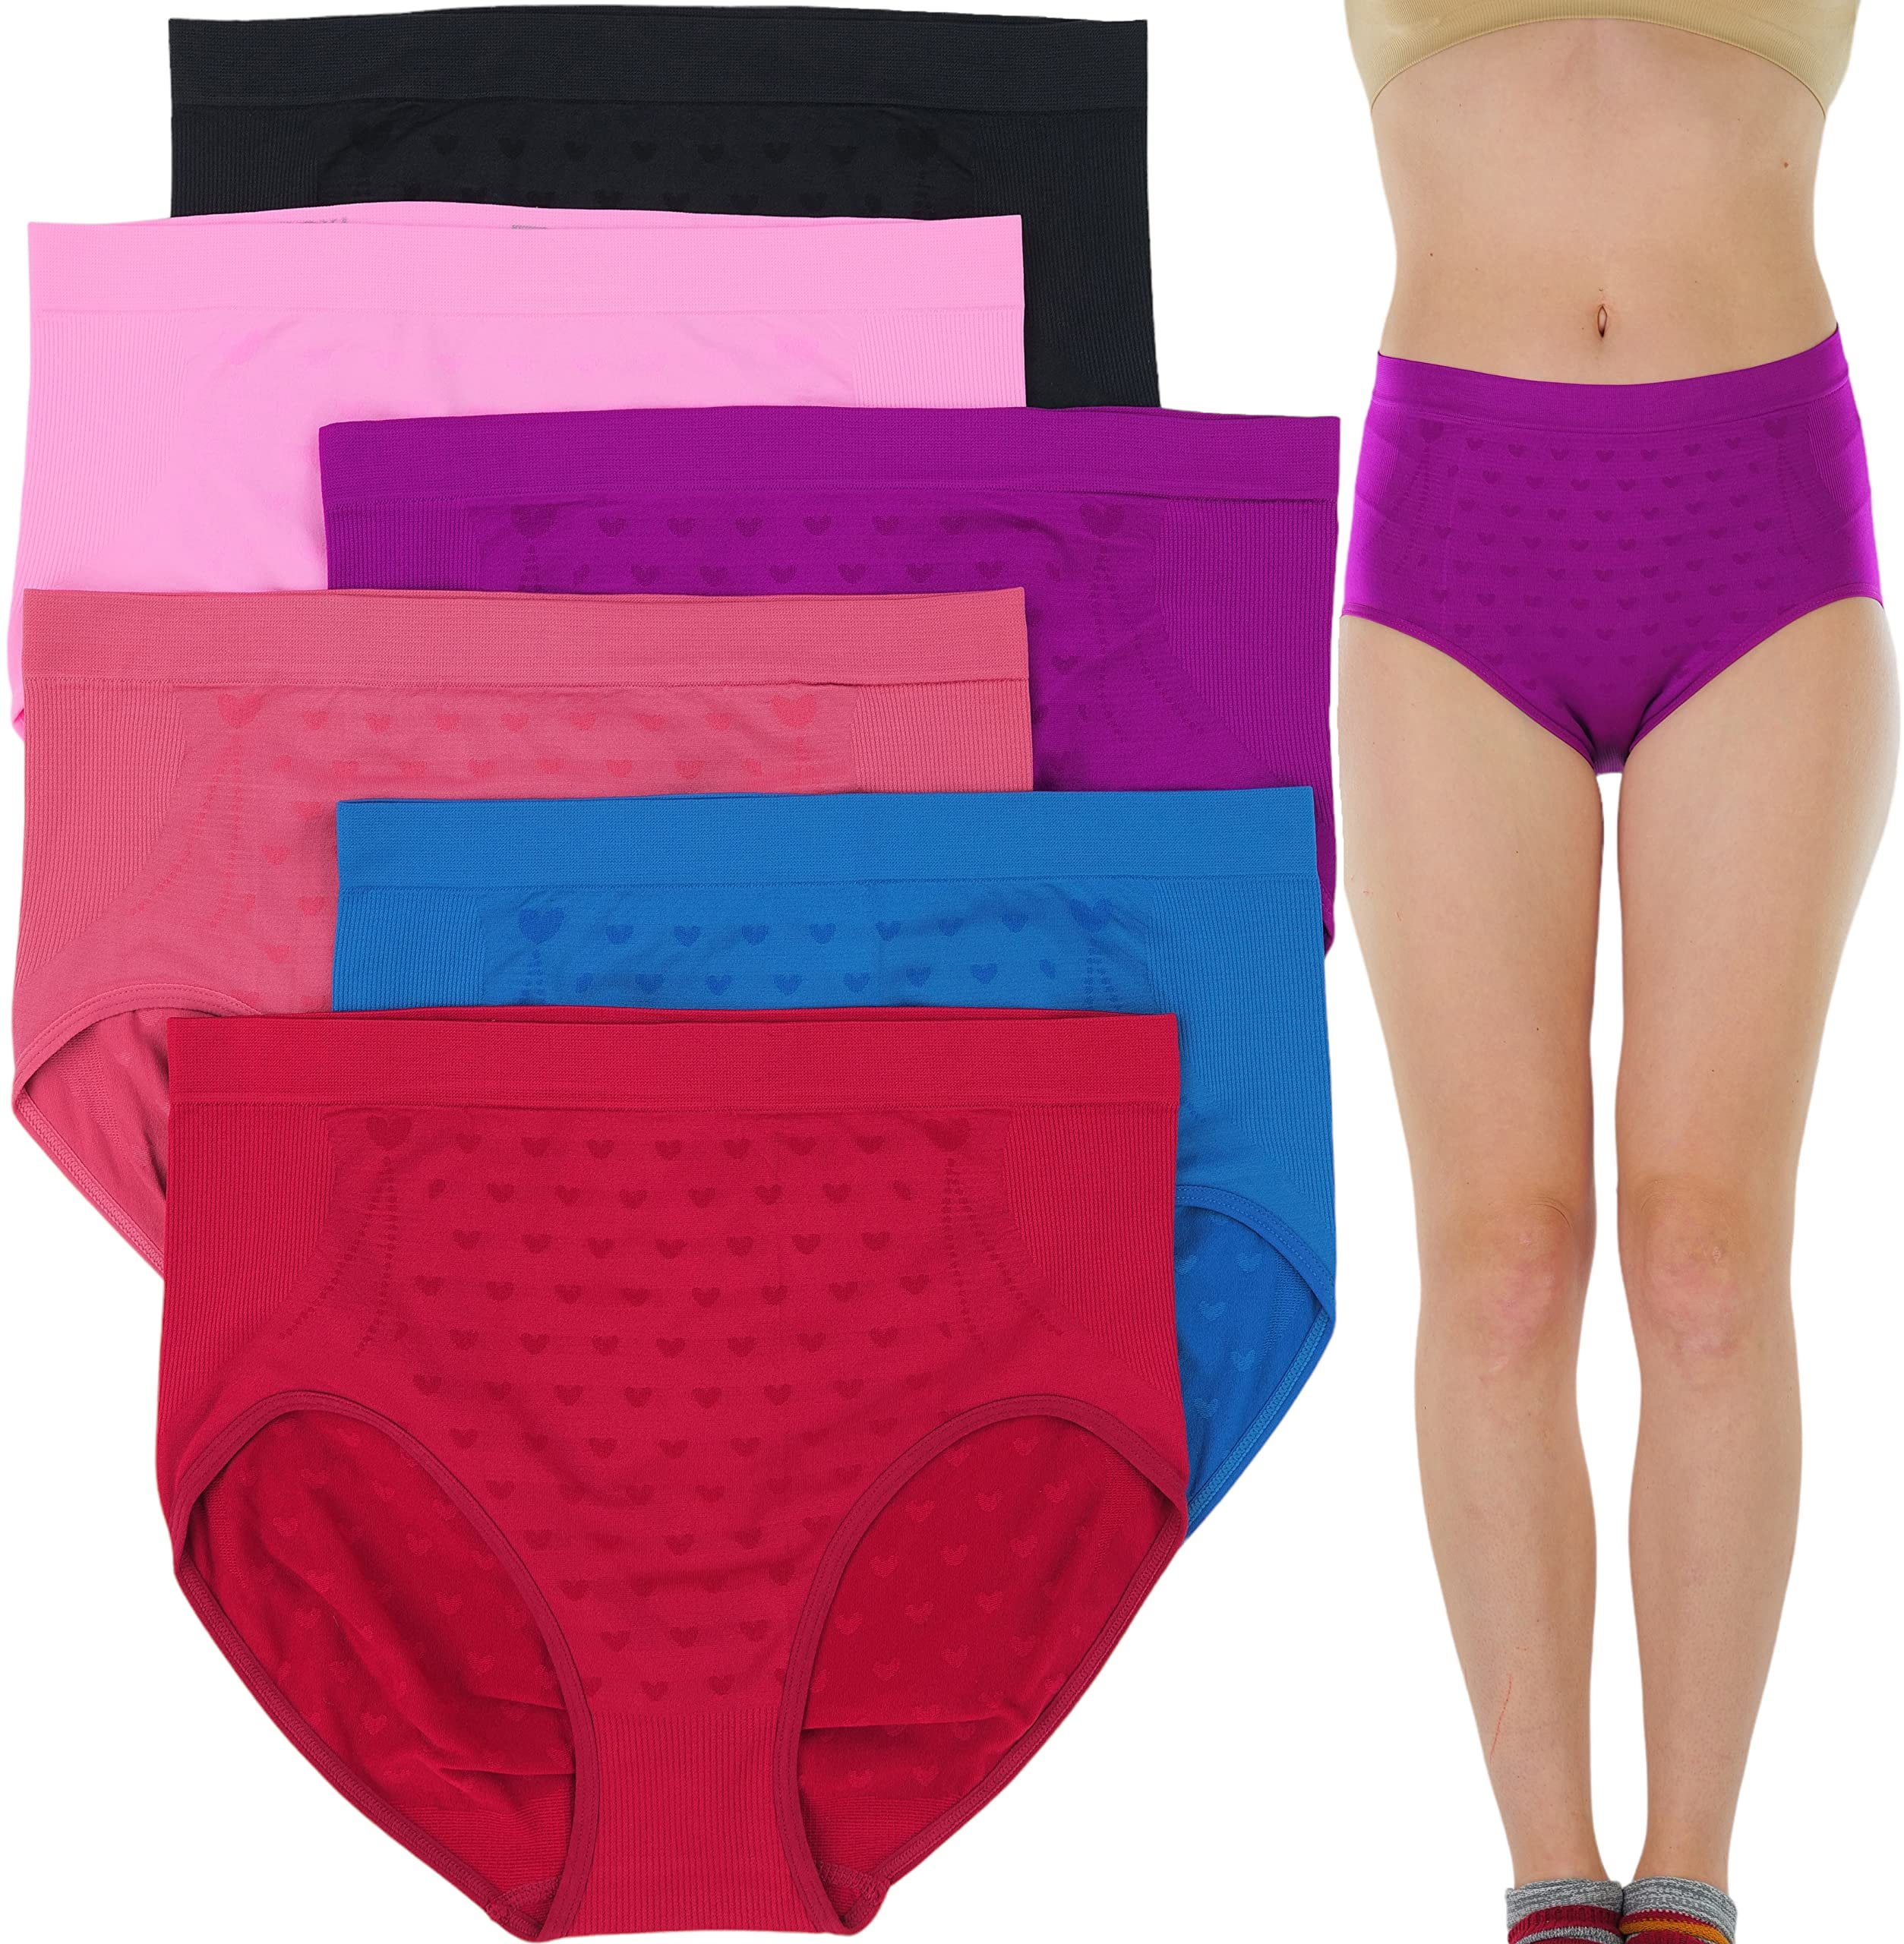 ELLEN TRACY Essentials Womens Seamless Briefs 4-Pack Panties